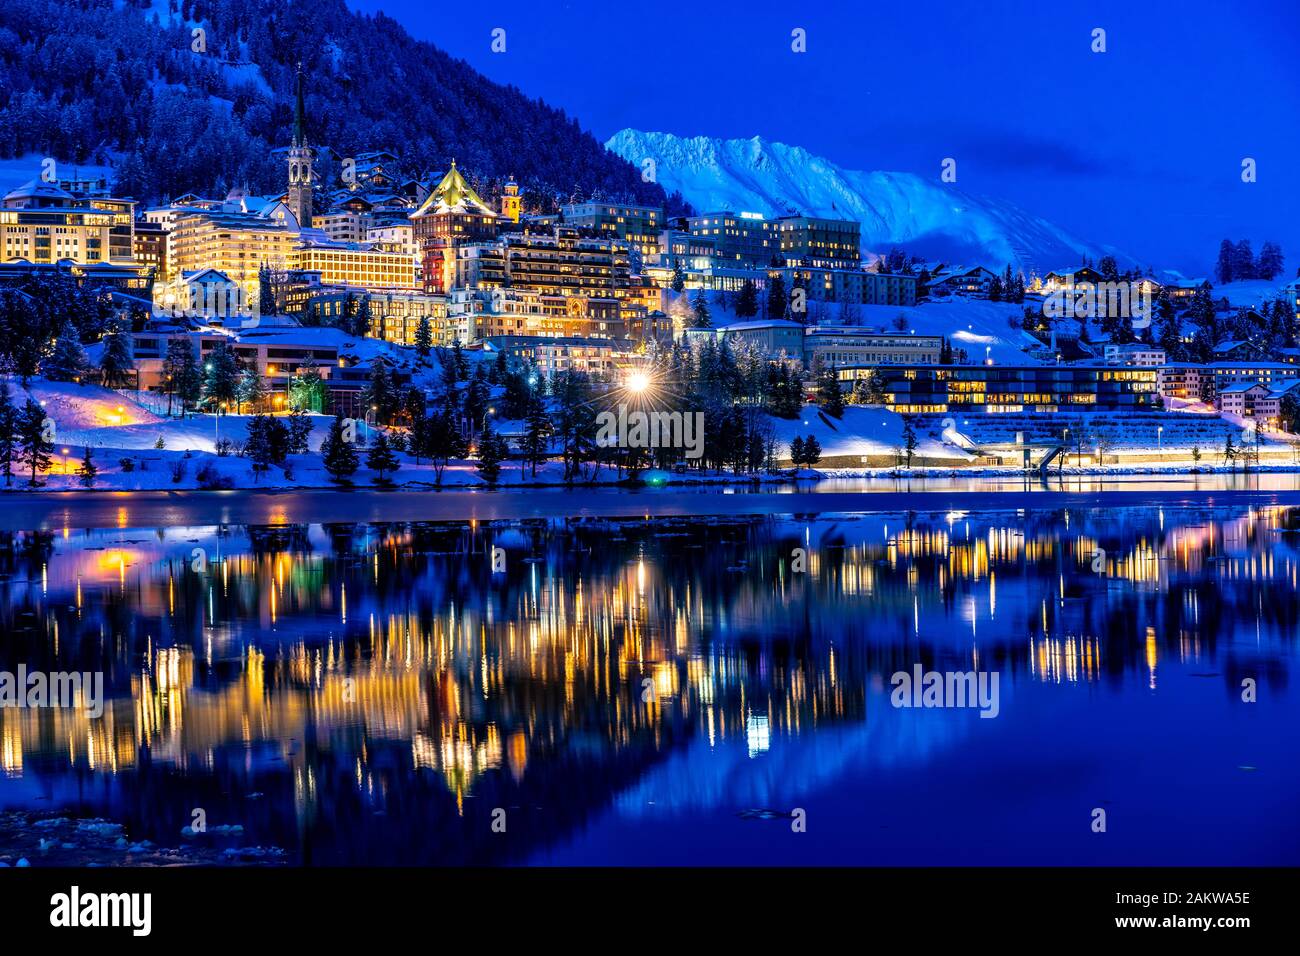 Vue sur les magnifiques lumières nocturnes de Saint-Moritz en Suisse la nuit en hiver, avec réflexion du lac et des montagnes de neige dans le backgrouind Banque D'Images